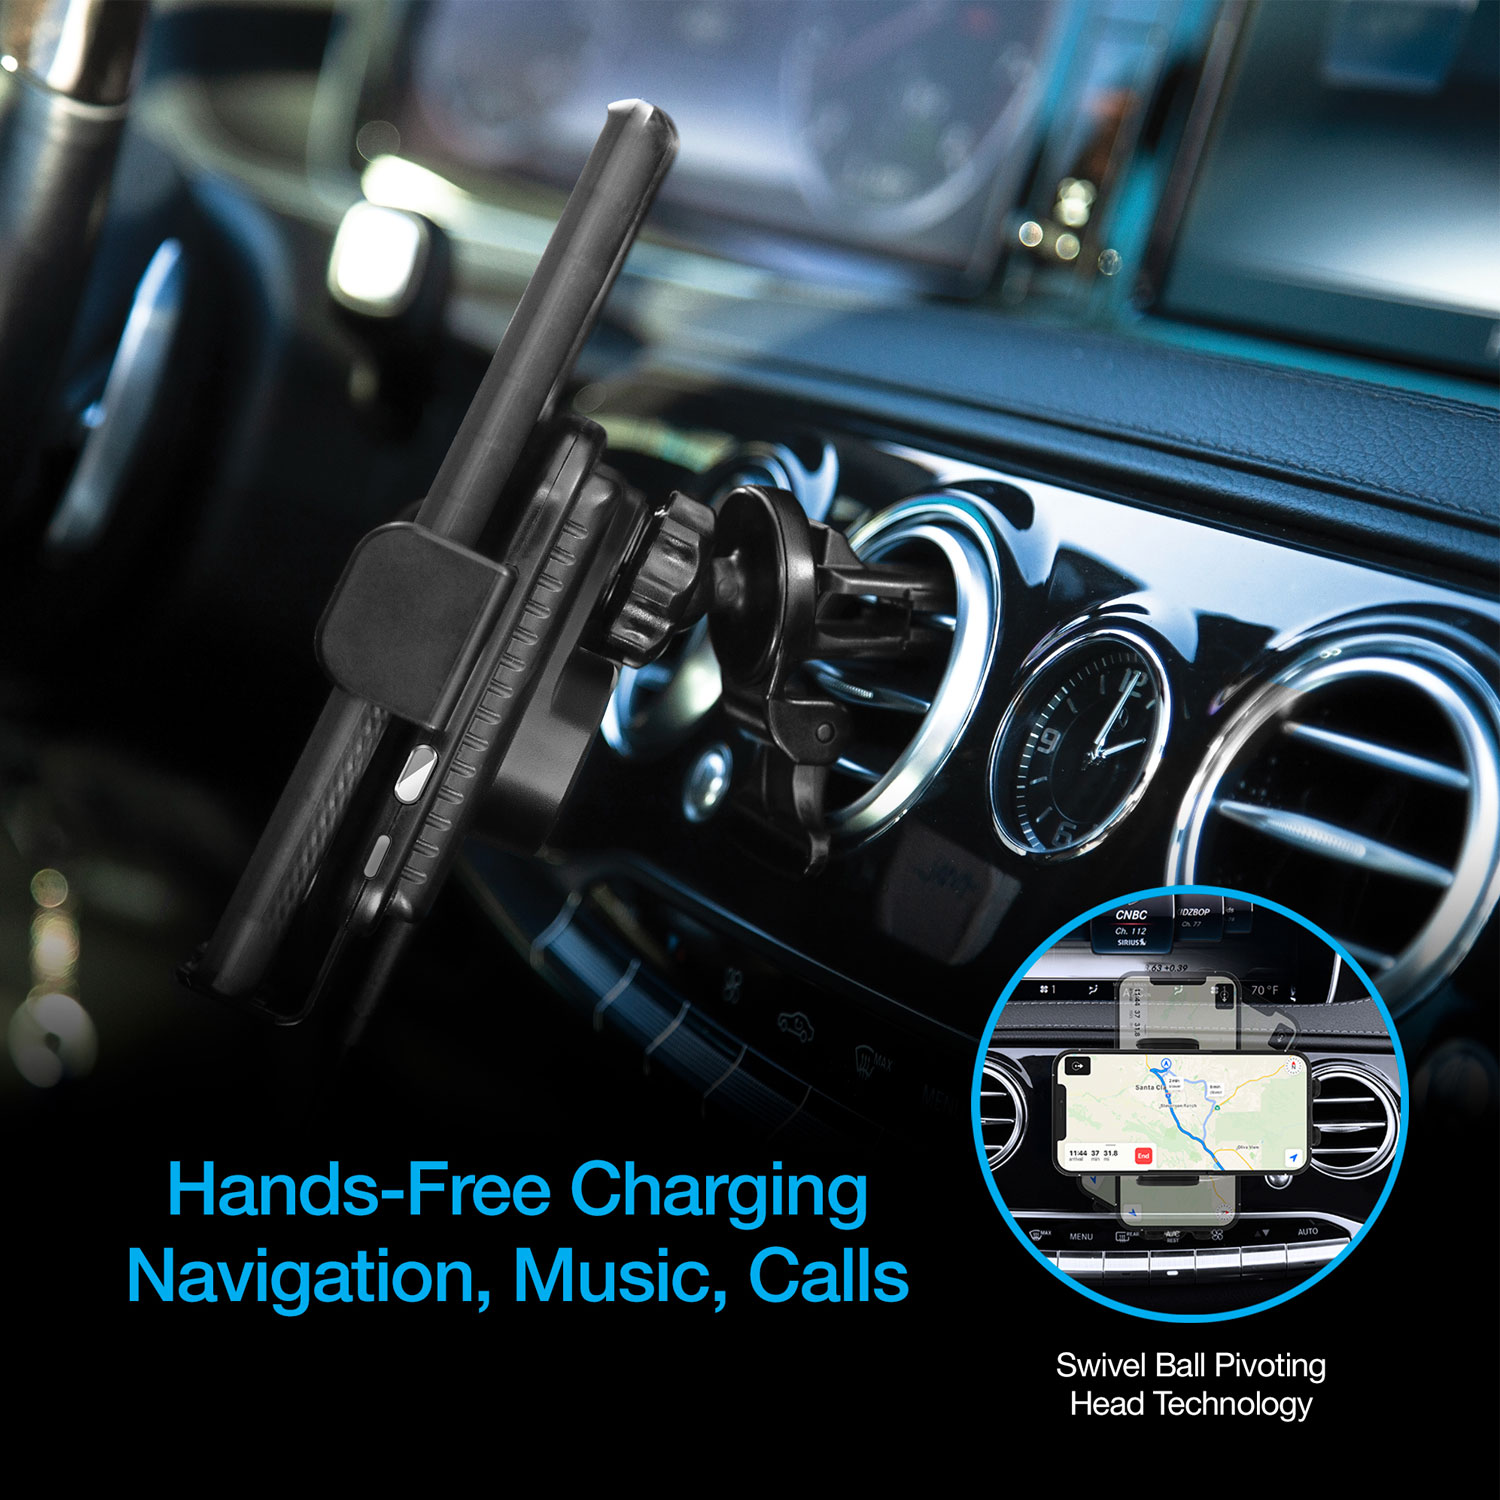 Naztech Smart Grip Wireless Charging Car Mount Black